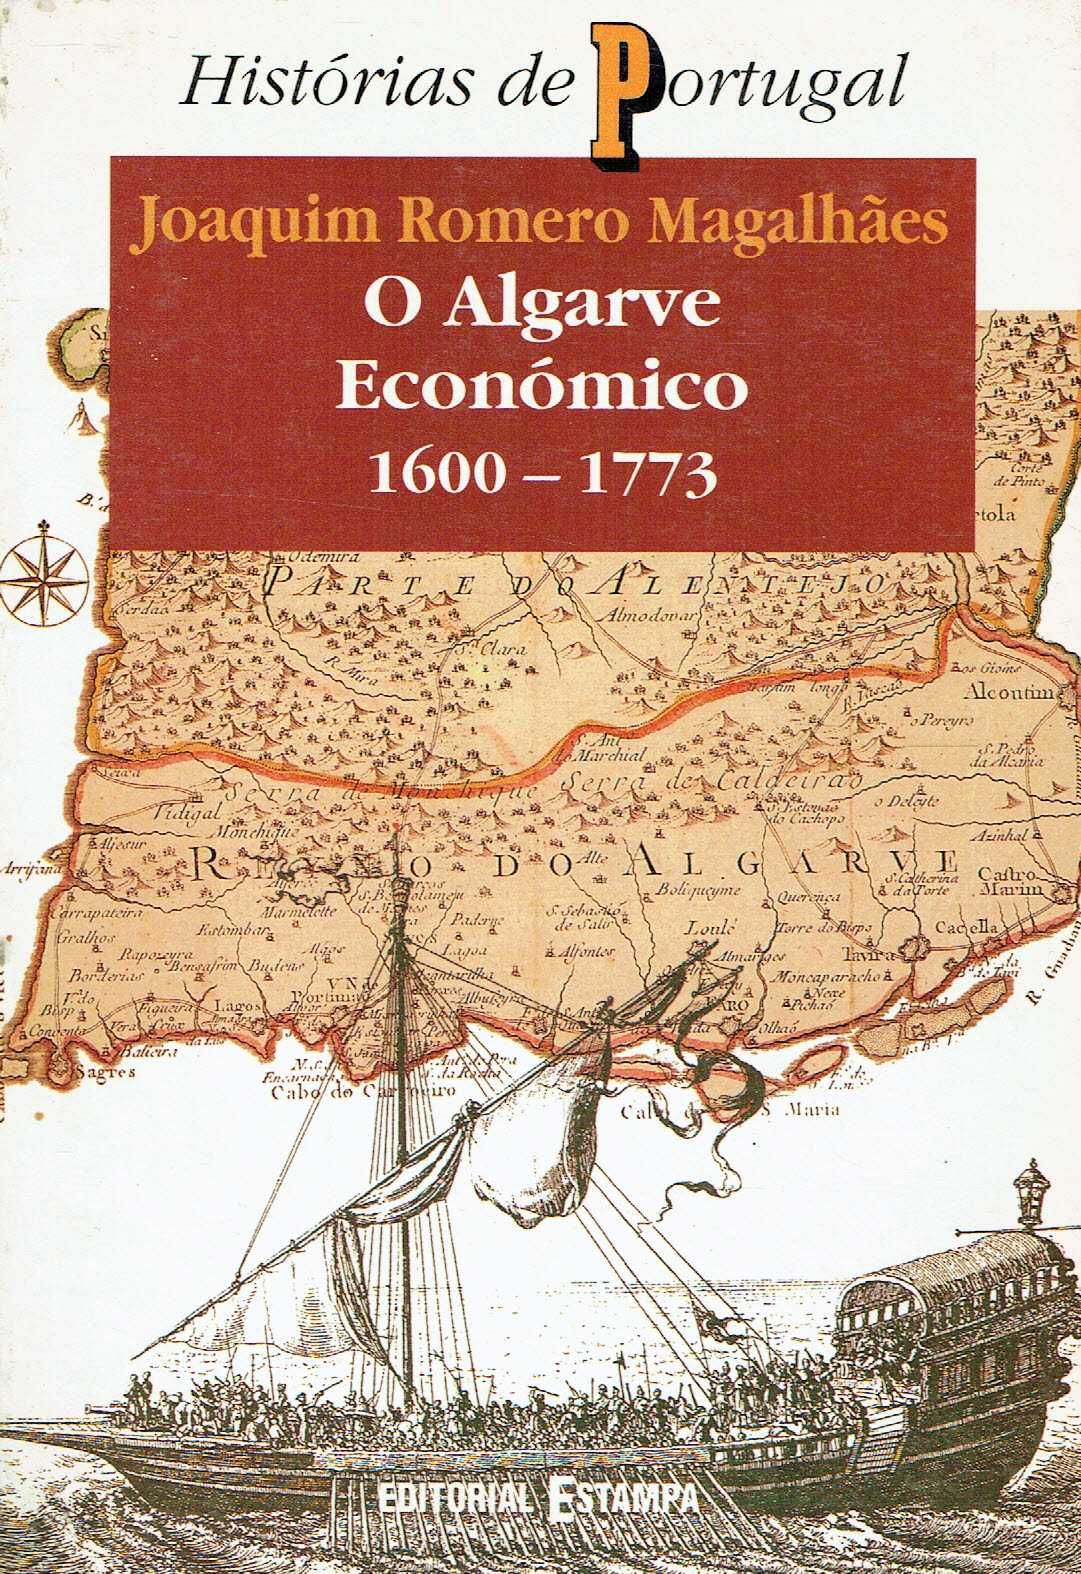 4028

O Algarve Económico 1600/1773
de Joaquim Romero Magalhães